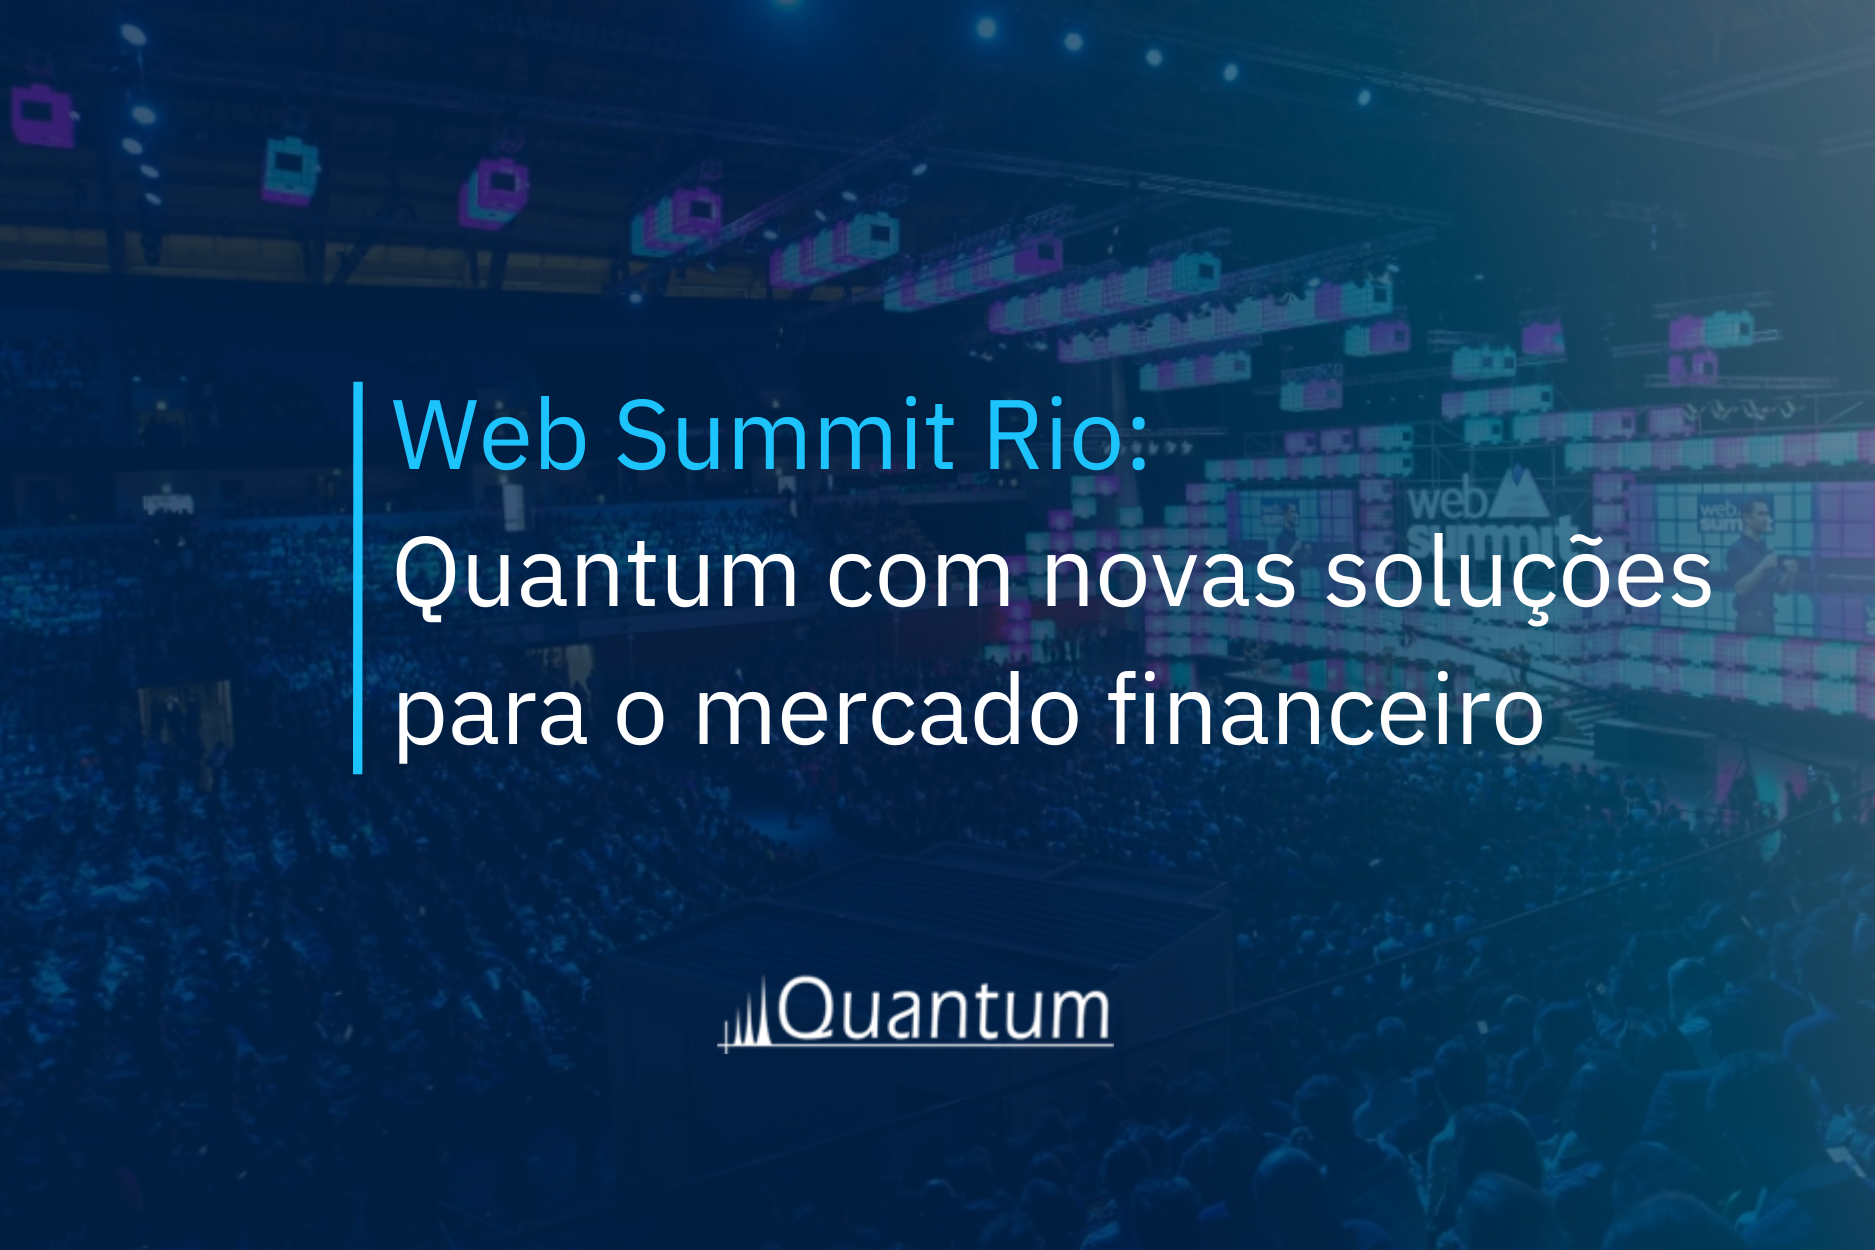 Web Summit Rio: Quantum com novas soluções para o mercado financeiro